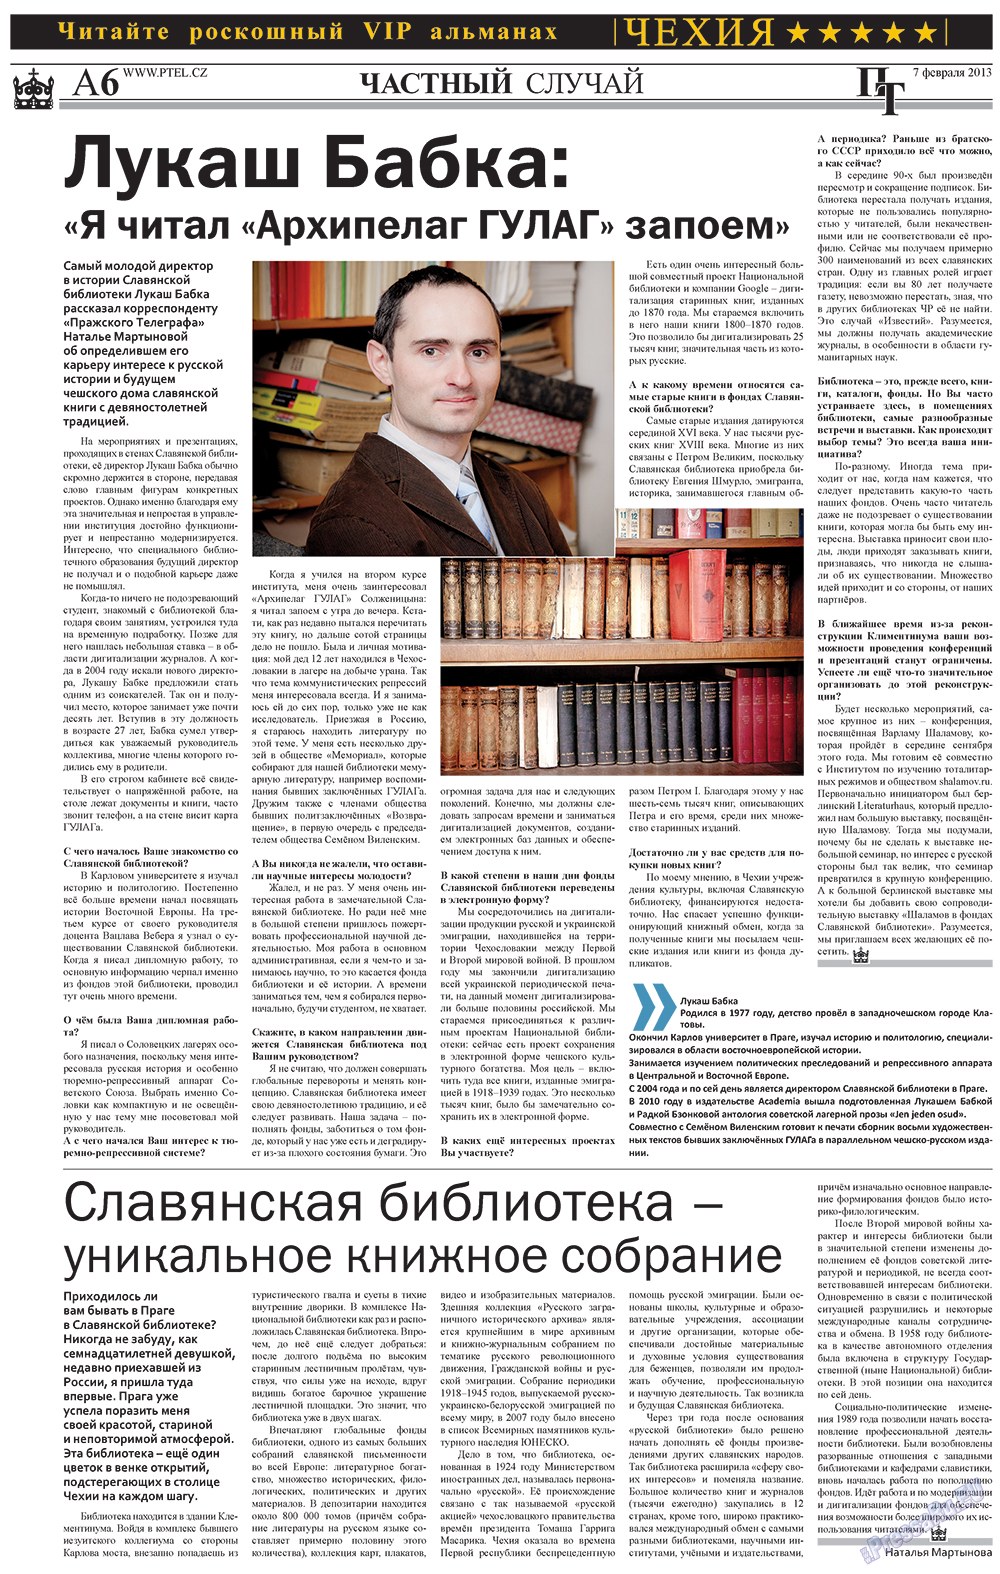 Пражский телеграф (газета). 2013 год, номер 5, стр. 6